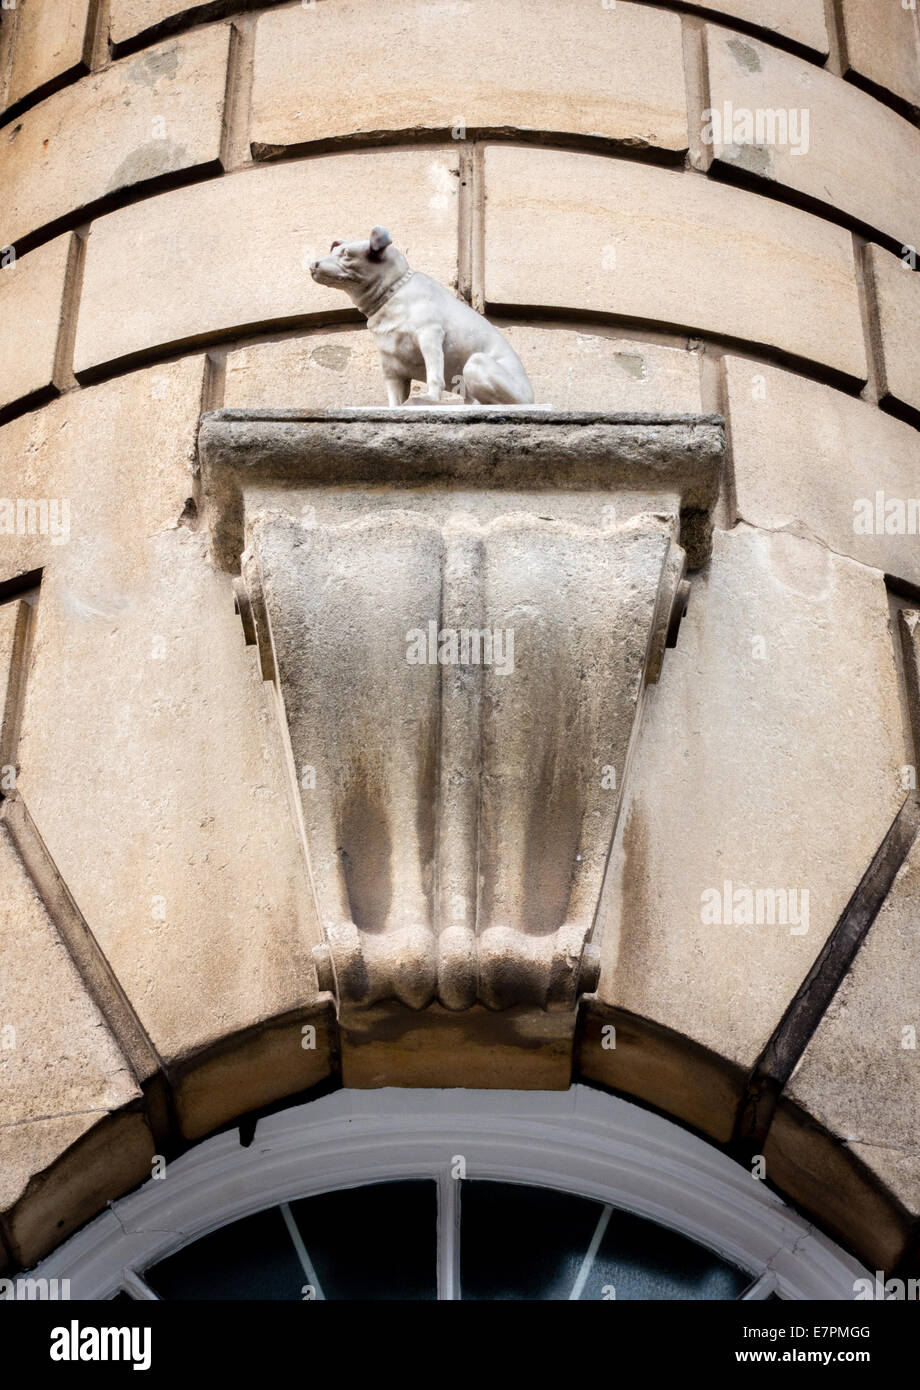 Nipper le Jack Russell de la voix de son maître la renommée commémoré dans une sculpture en pierre sur un bâtiment de l'Université de Bristol Banque D'Images